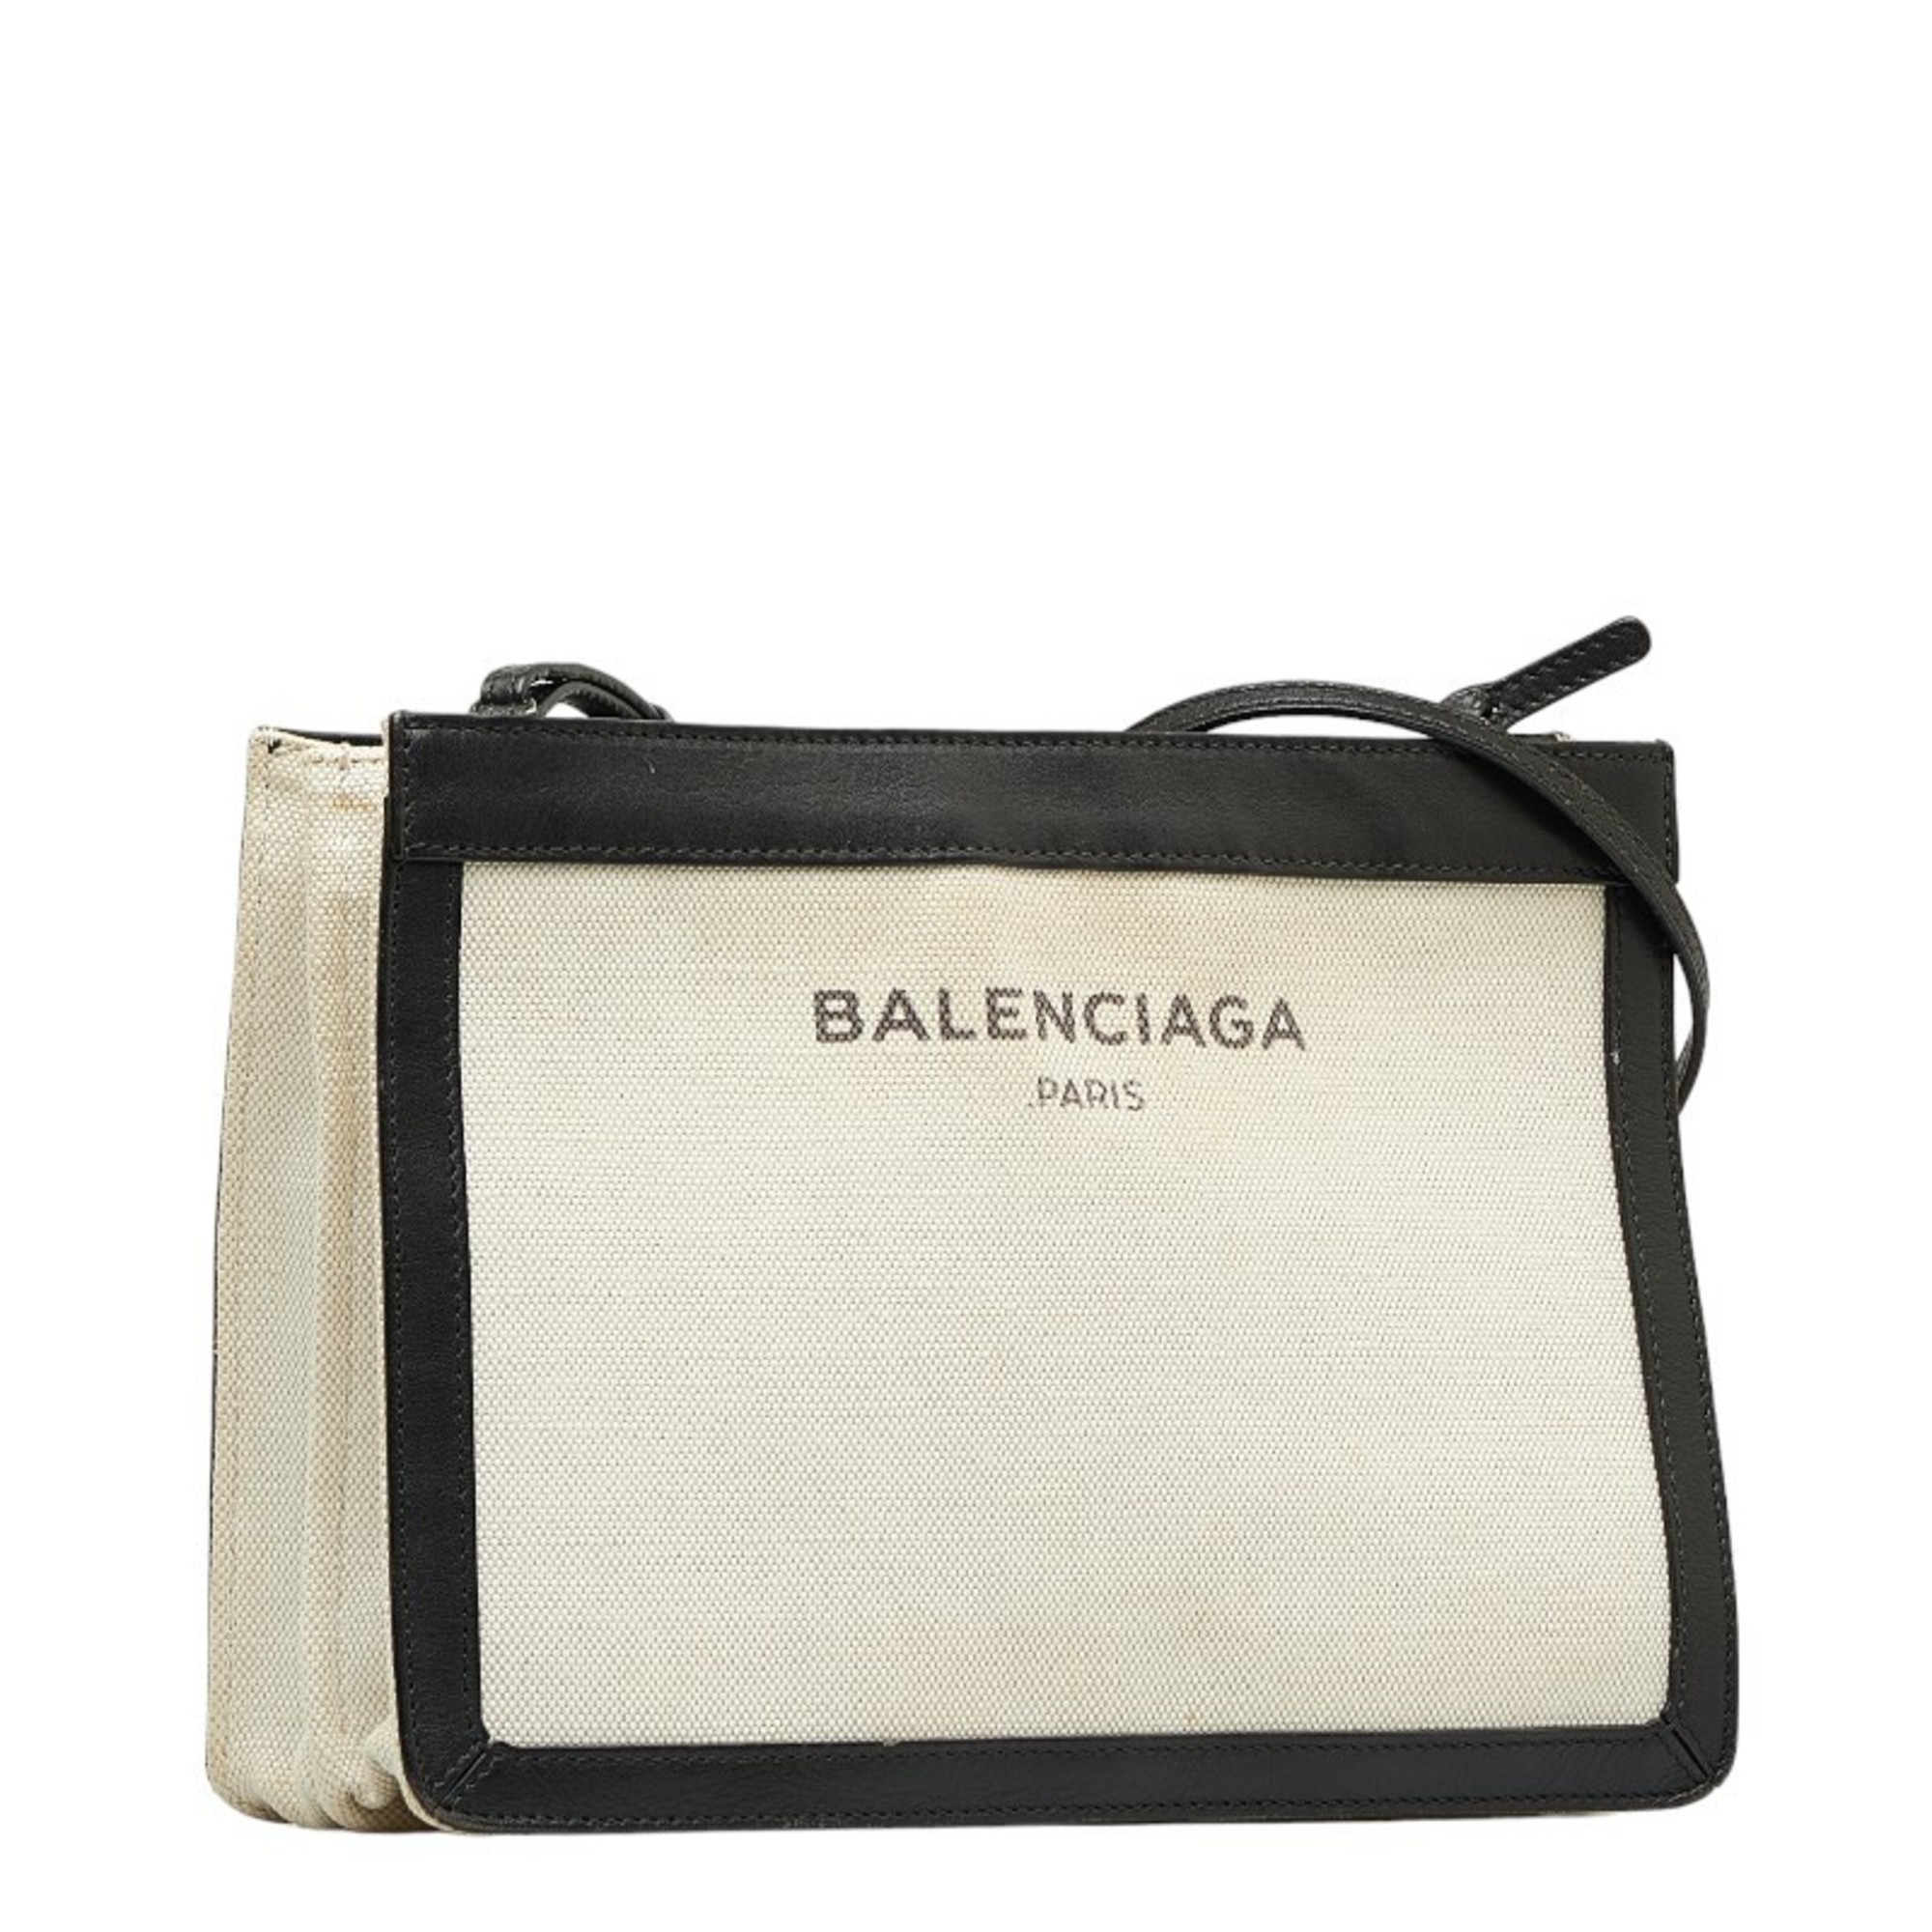 Balenciaga Navy Pochette Shoulder Bag 339937 White Black Canvas Leather Women's BALENCIAGA